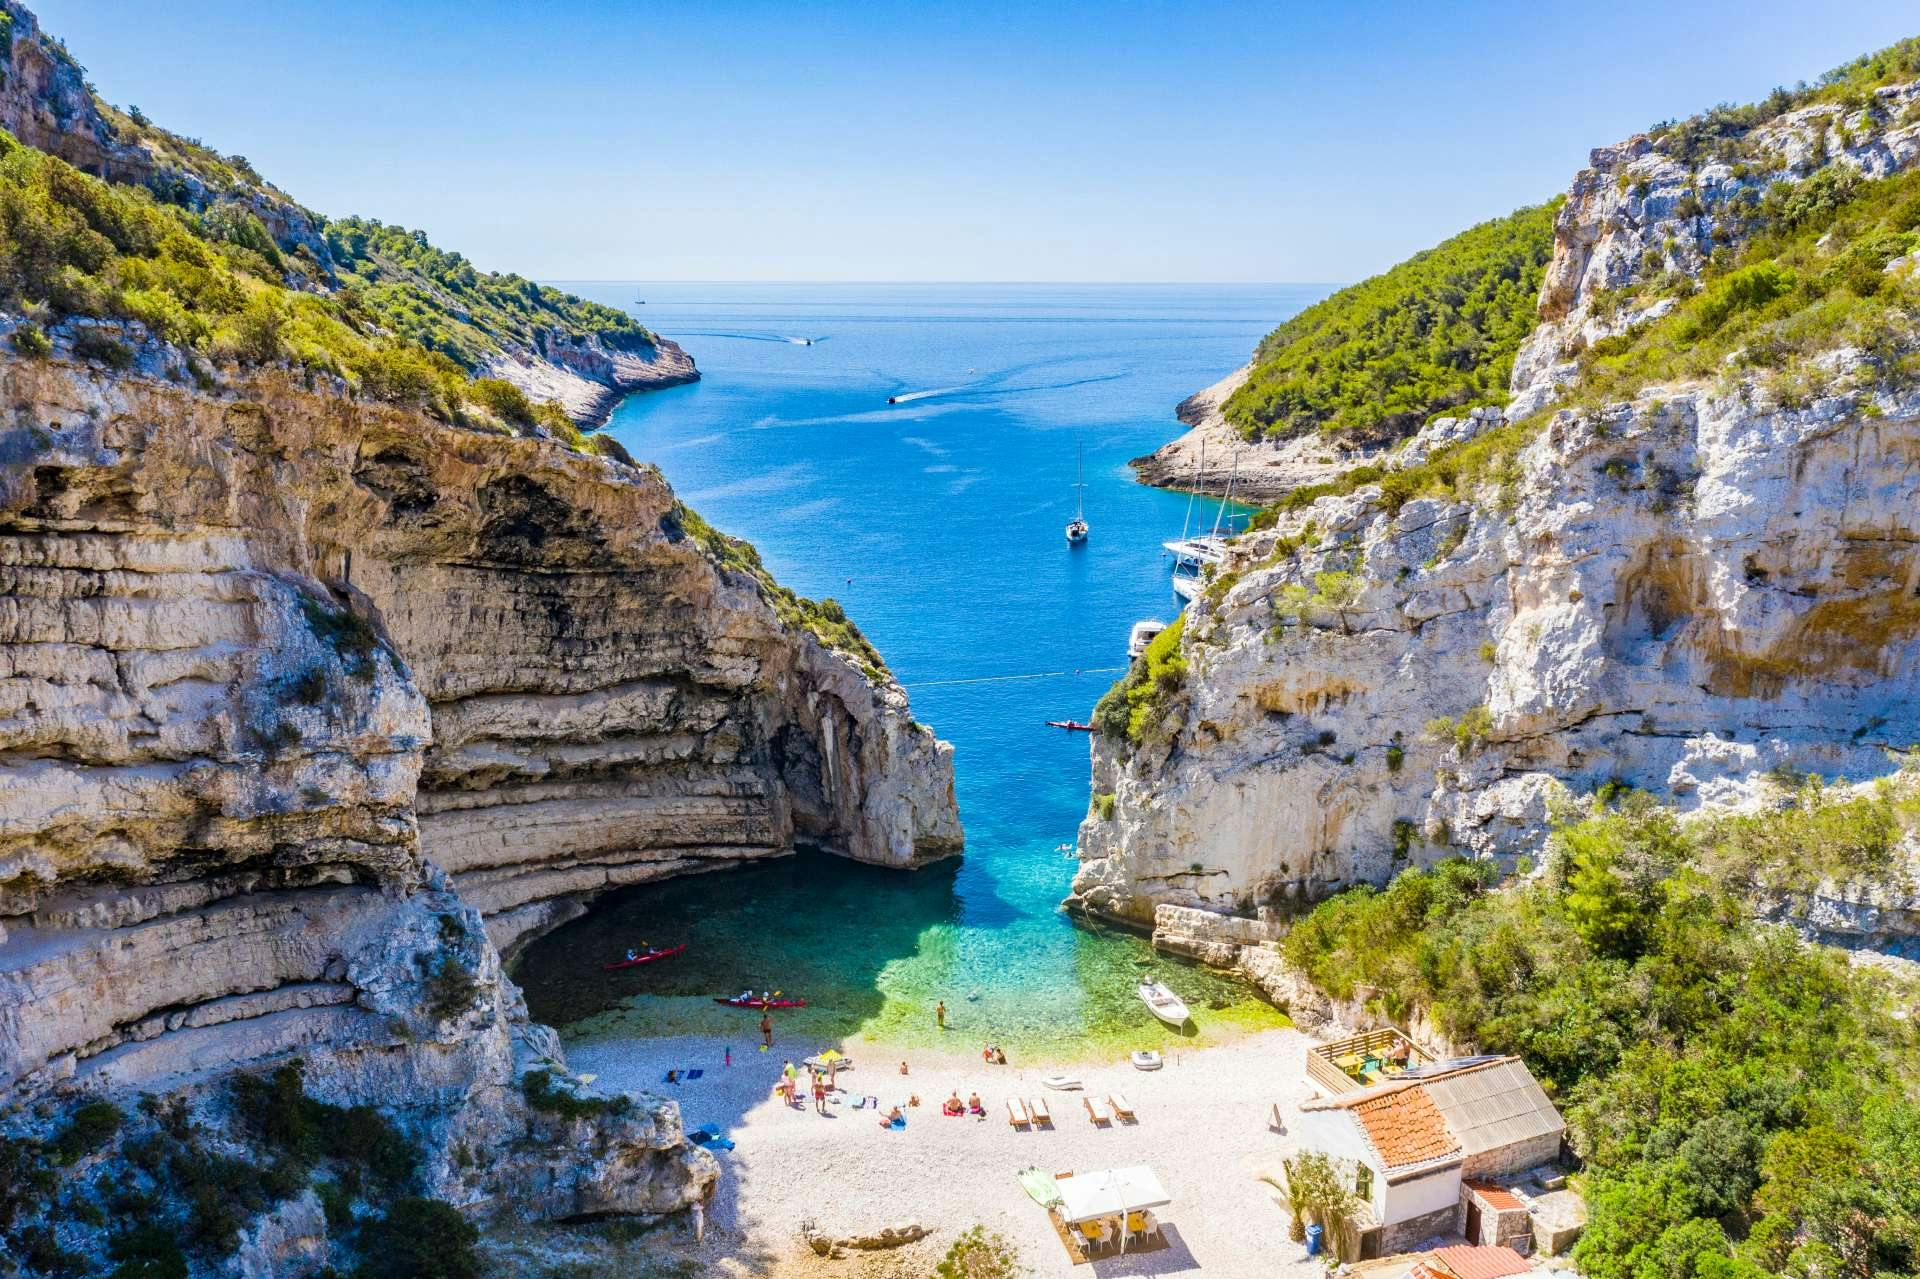 La spiaggia più bella della Croazia e anche una volta votata come la spiaggia più bella d'Europa. Faremo una sosta per nuotare qui, di solito per 30 minuti, così avrai abbastanza tempo per nuotare fino a riva e magari anche fare uno spuntino o un drink nel piccolo bar sulla spiaggia.